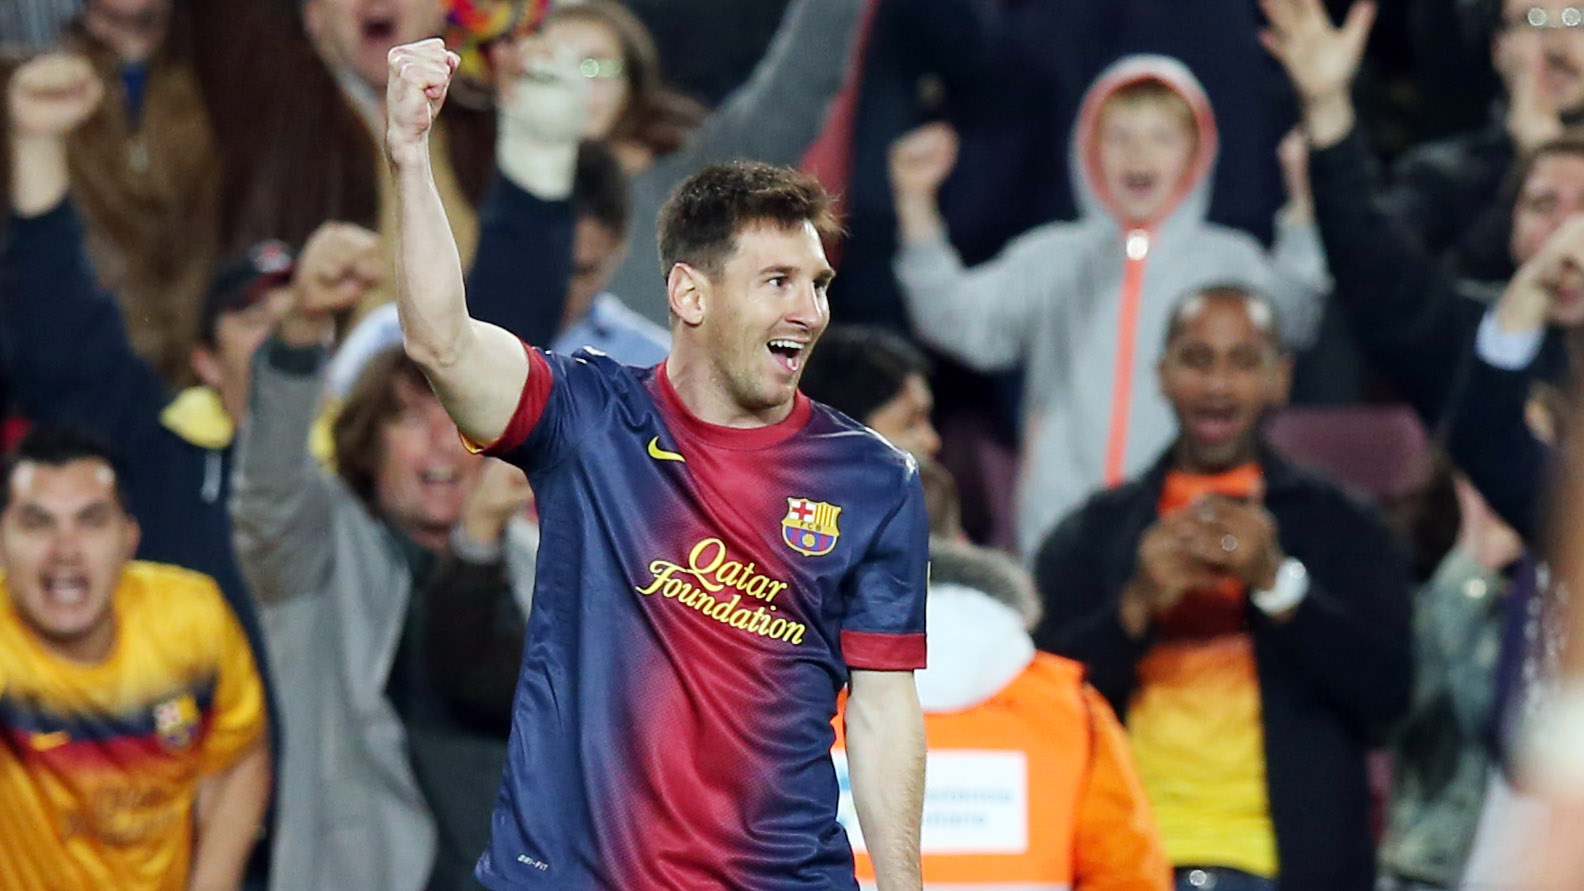 Leo Messi, the supersub